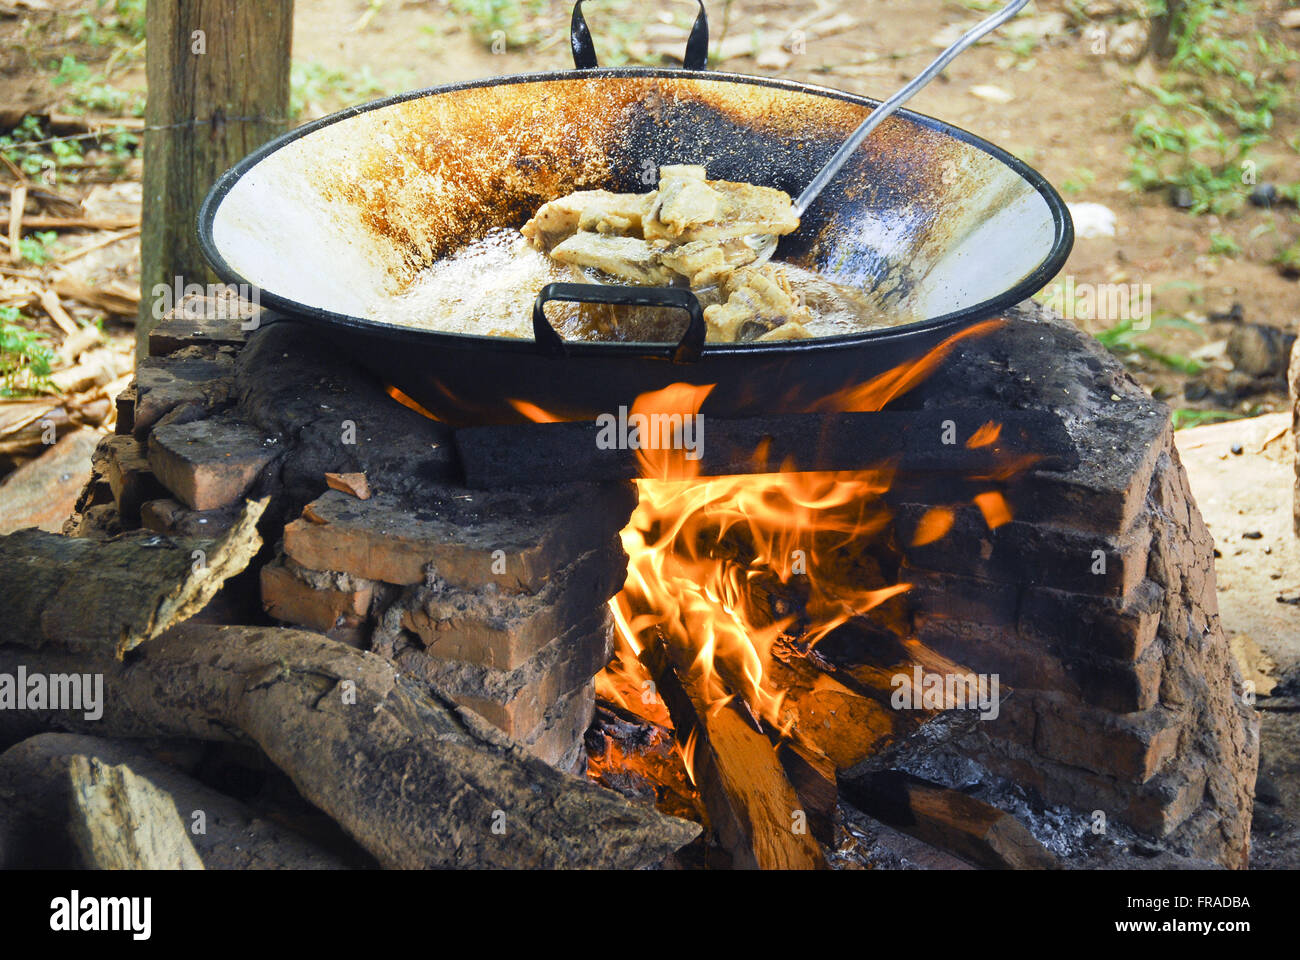 Fry mettre le ventrecha Sspi poisson - cuiabana la nourriture traditionnelle Banque D'Images